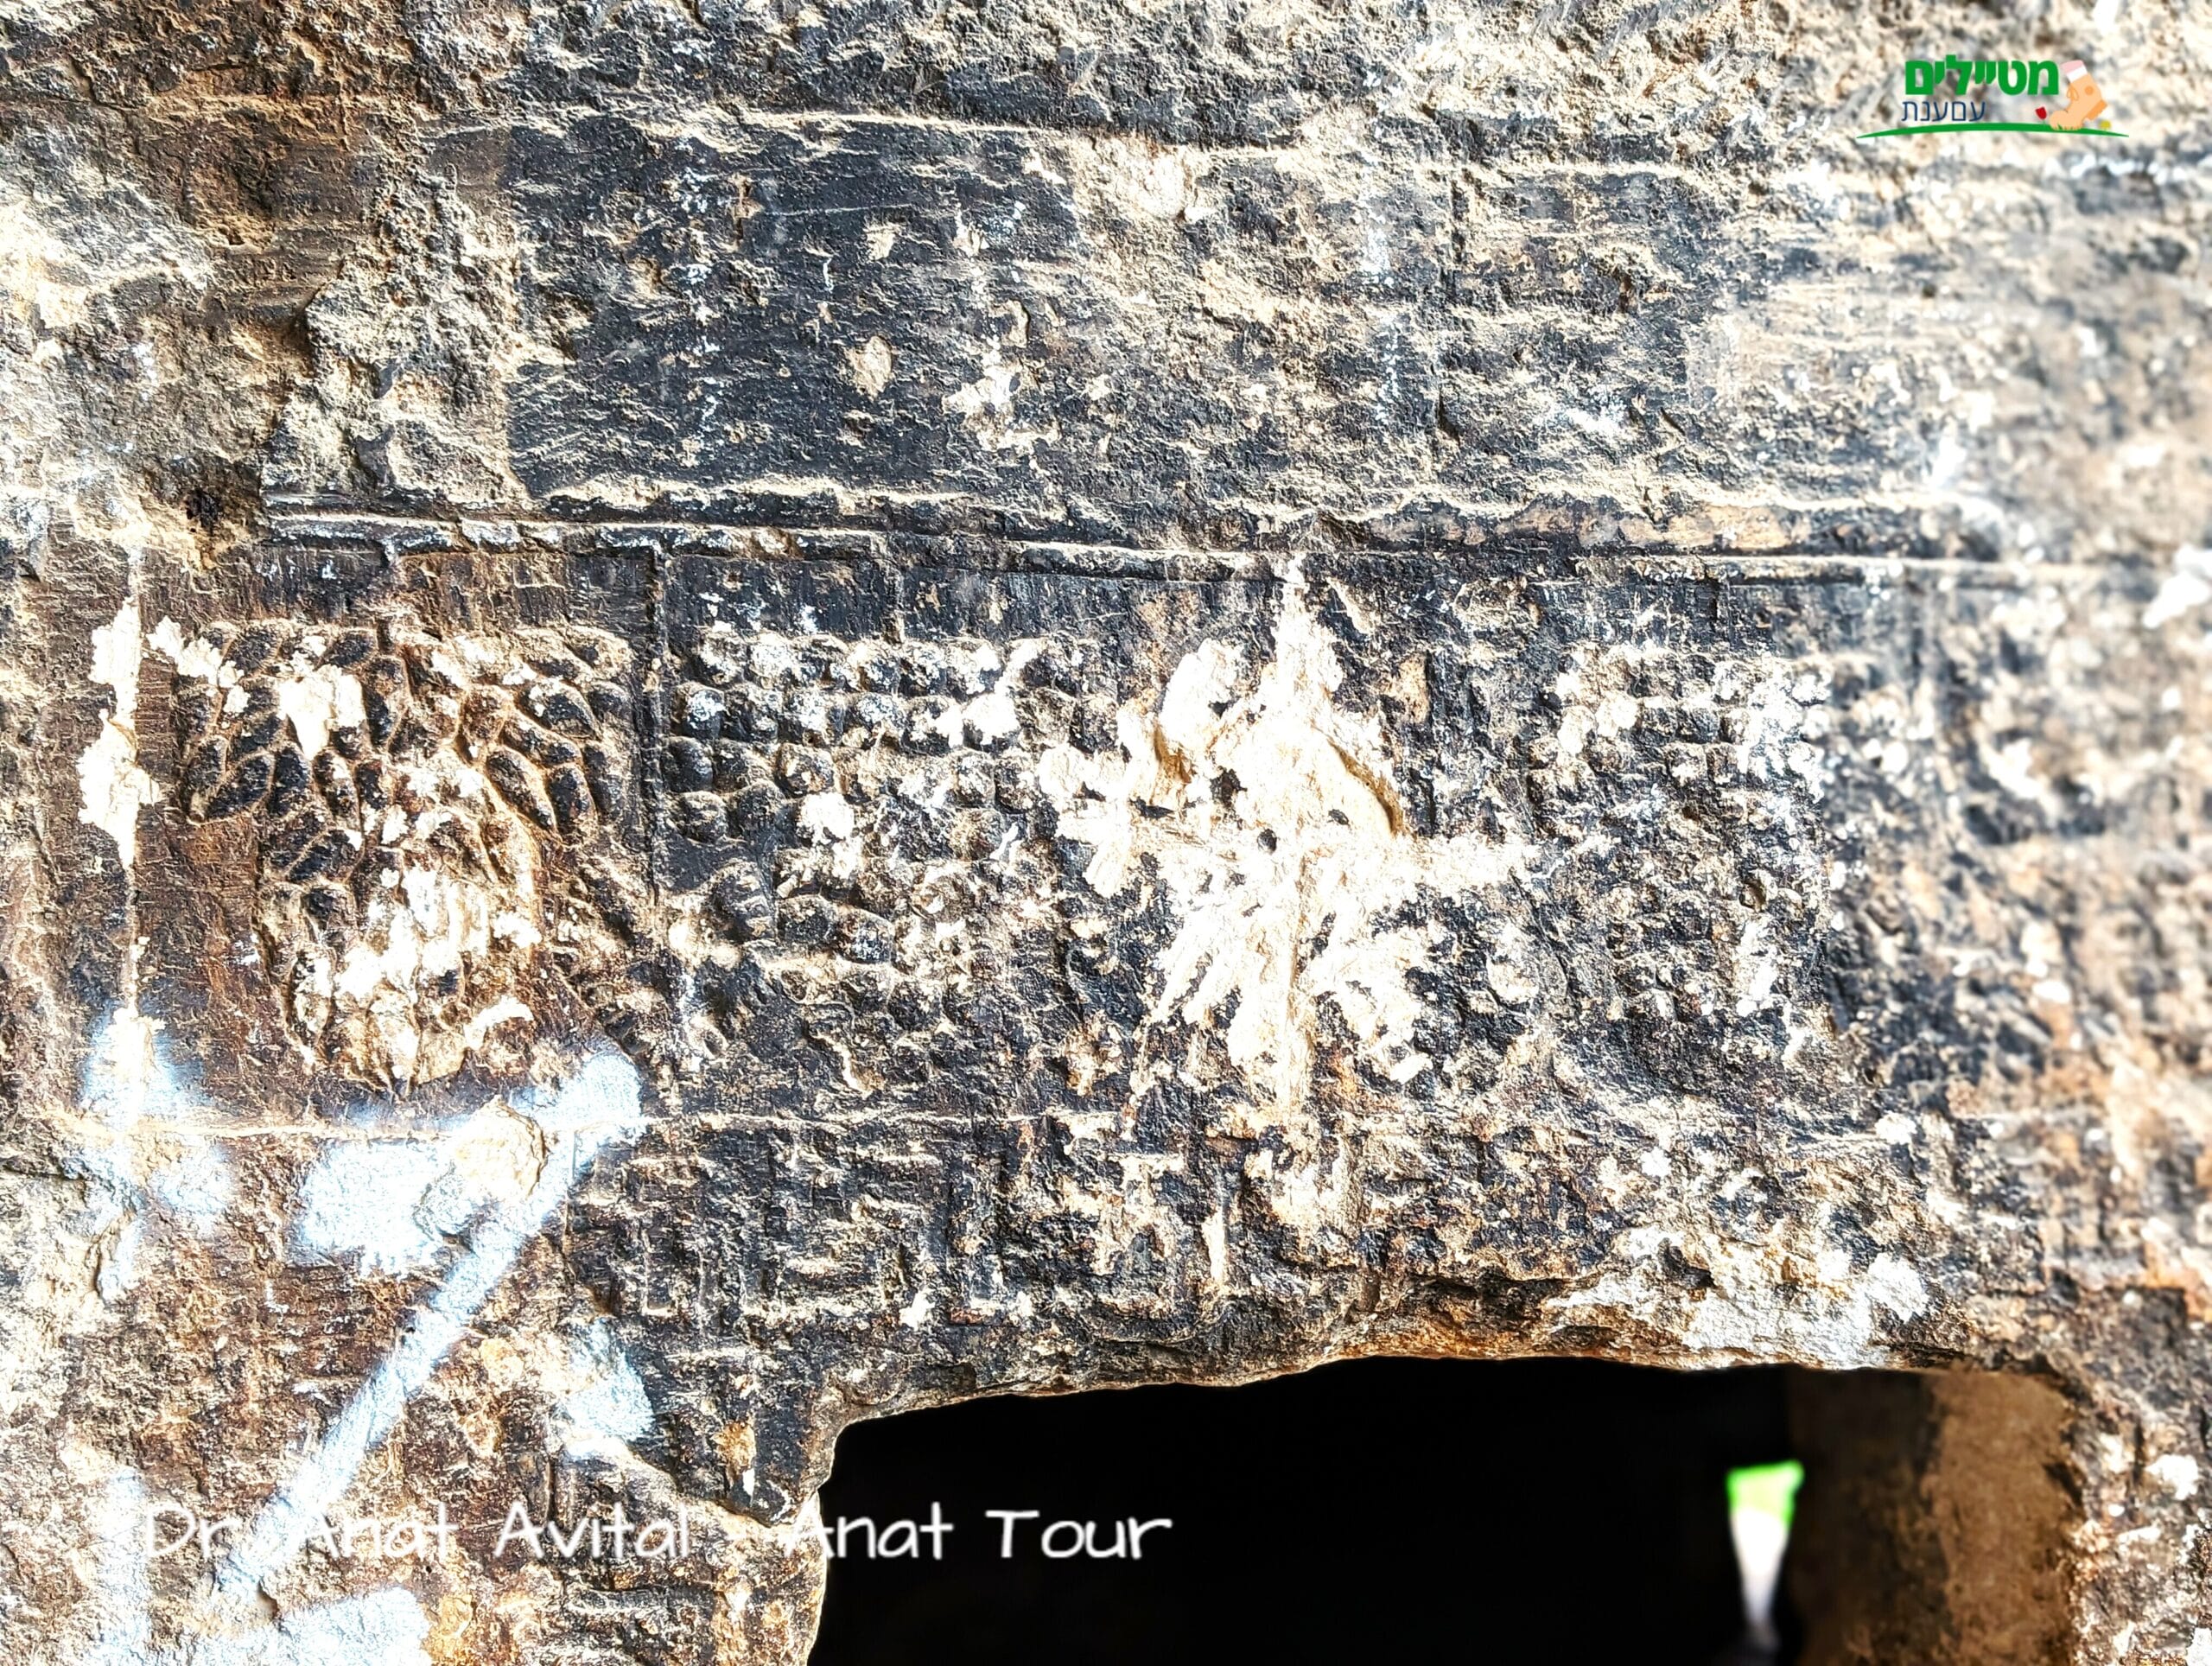 עיטורי גפן בכניסה לחדר קבורה מערות מקטע עבוד (בית אריה) יהודית מימי הבית השני, צילום: ד"ר ענת אביטל